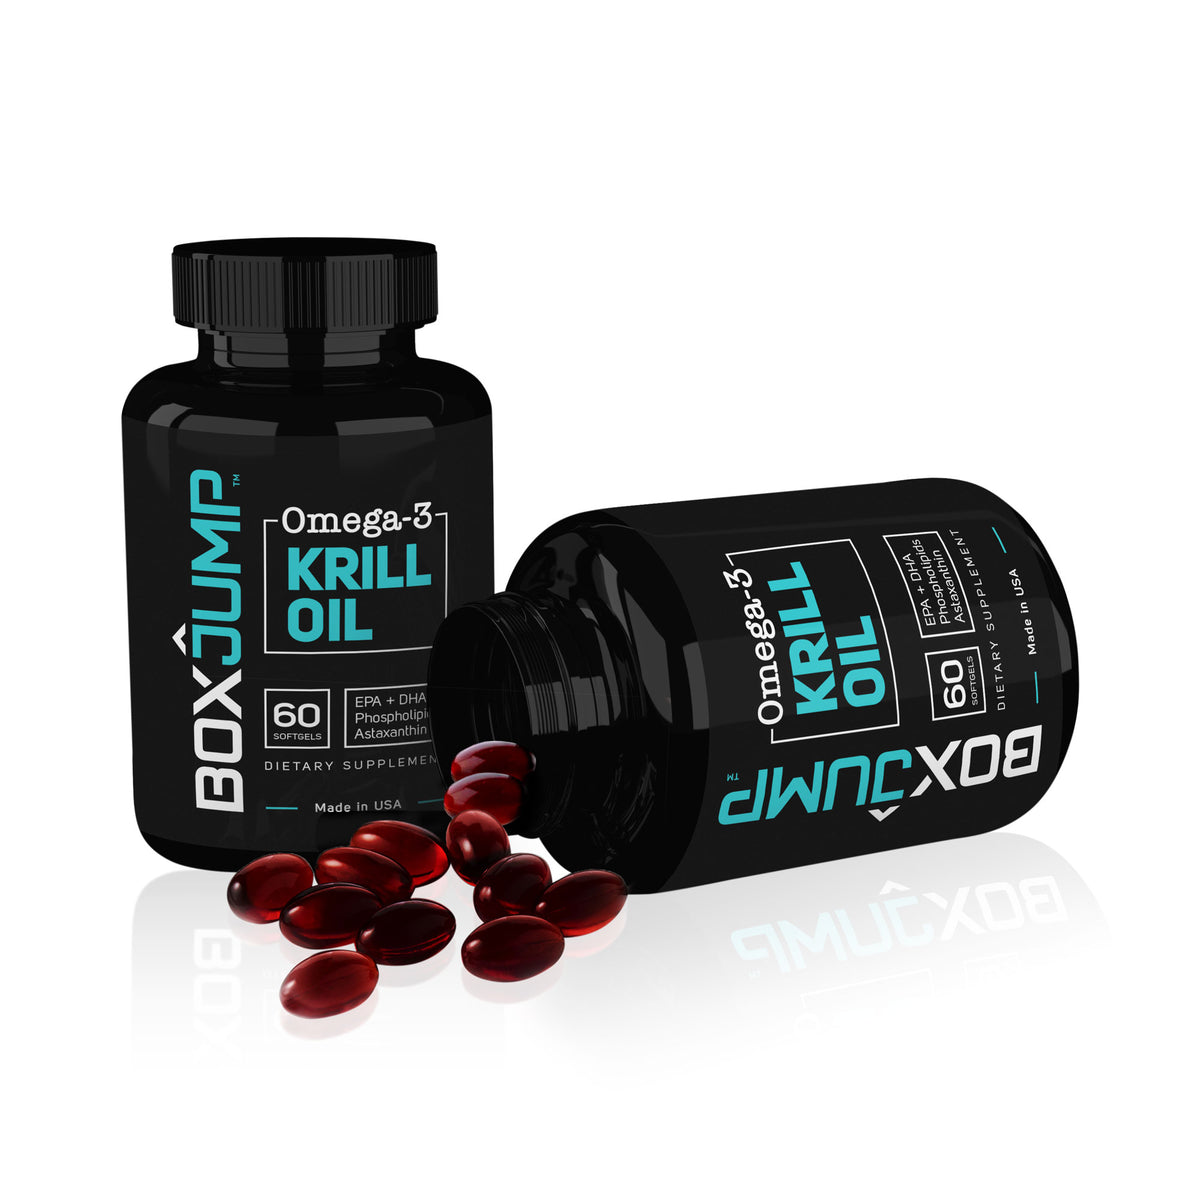 Omega-3 Krill Oil